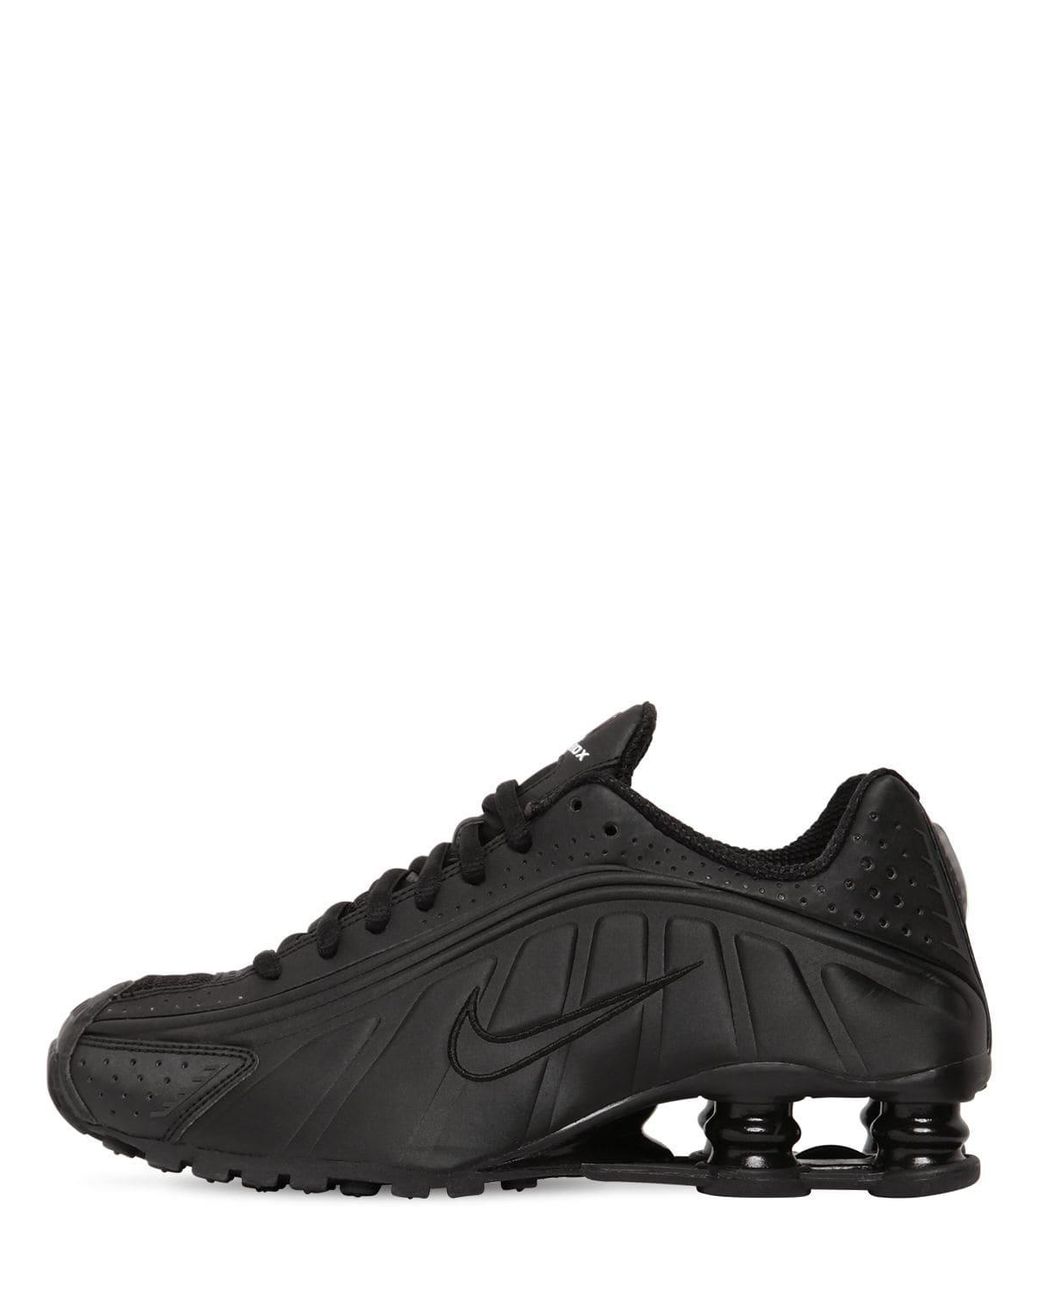 Nike Shox R4 Sneakers in Black - Lyst